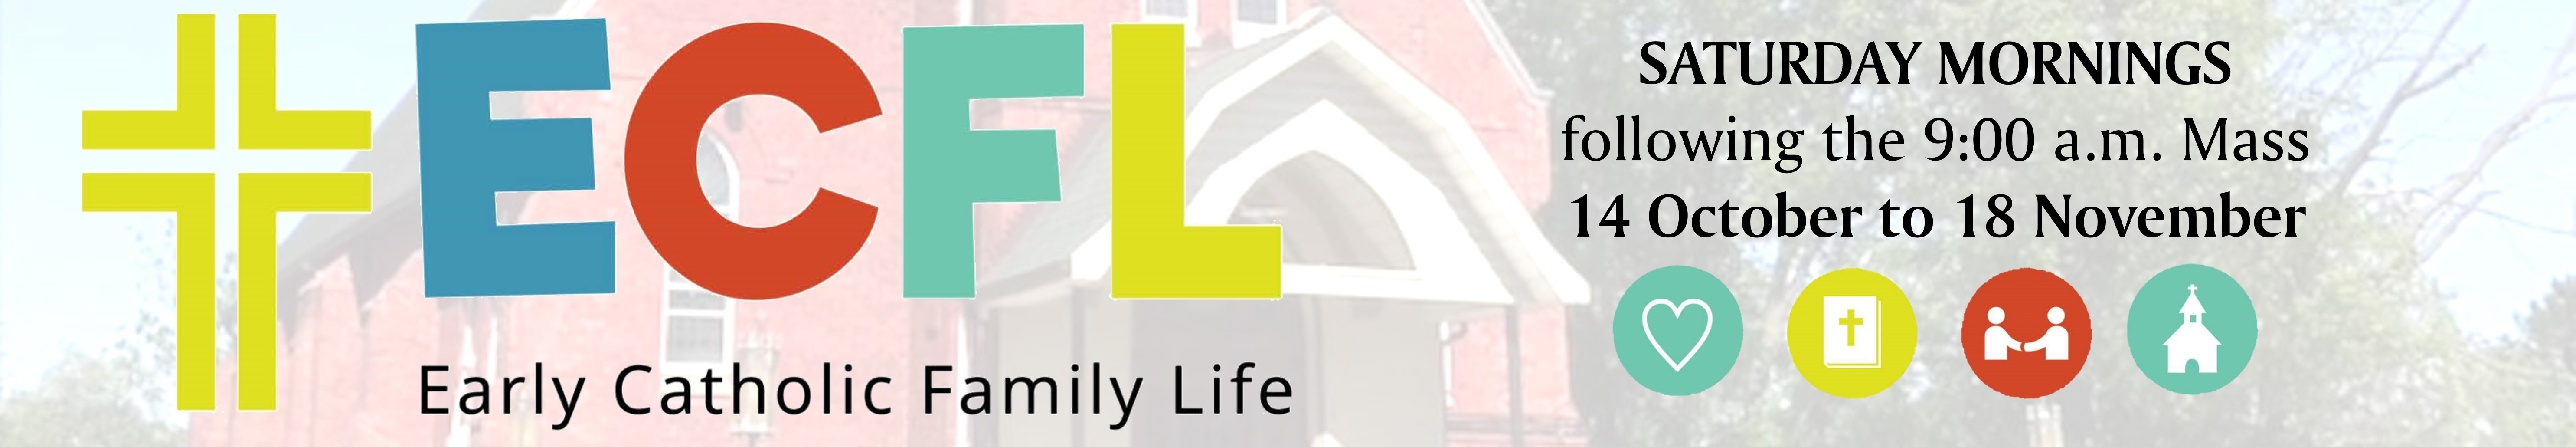 Header: Early Catholic Family Life Program